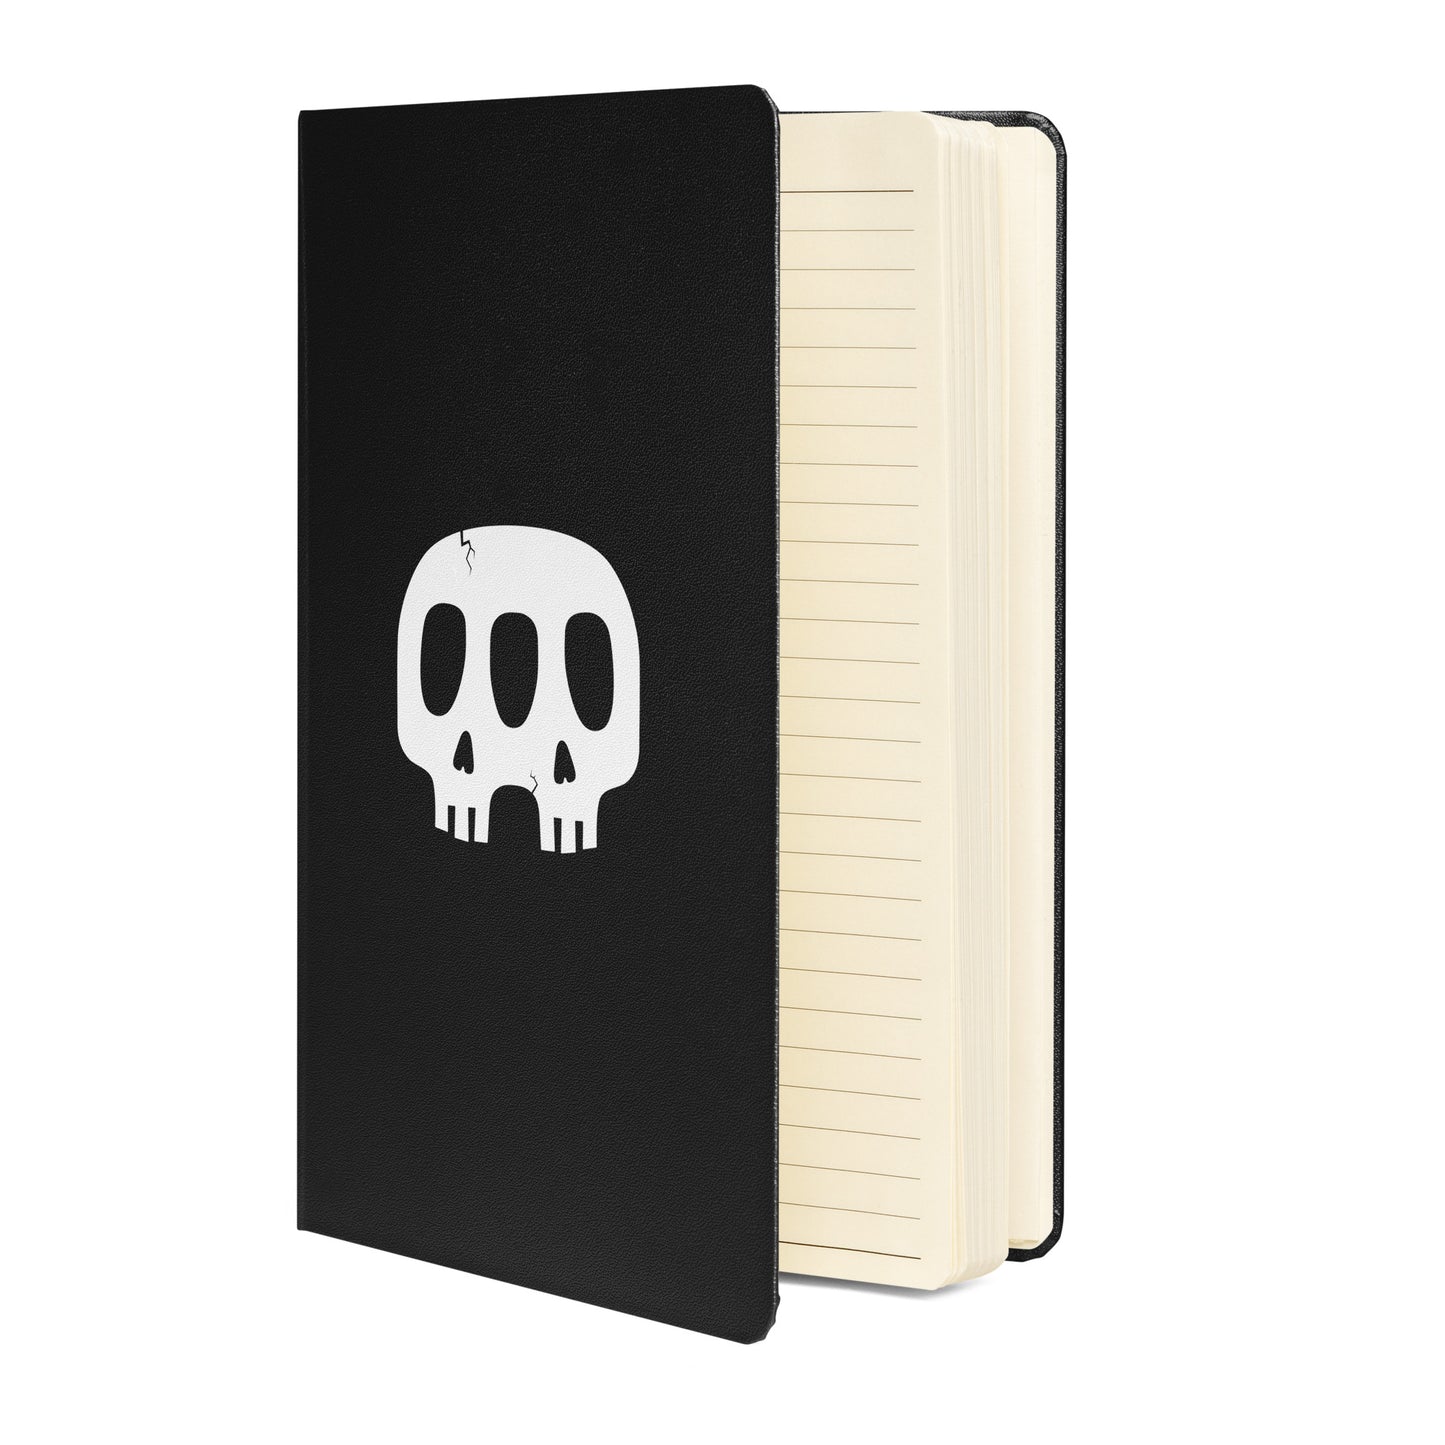 R&M Skullz hardcover bound notebook